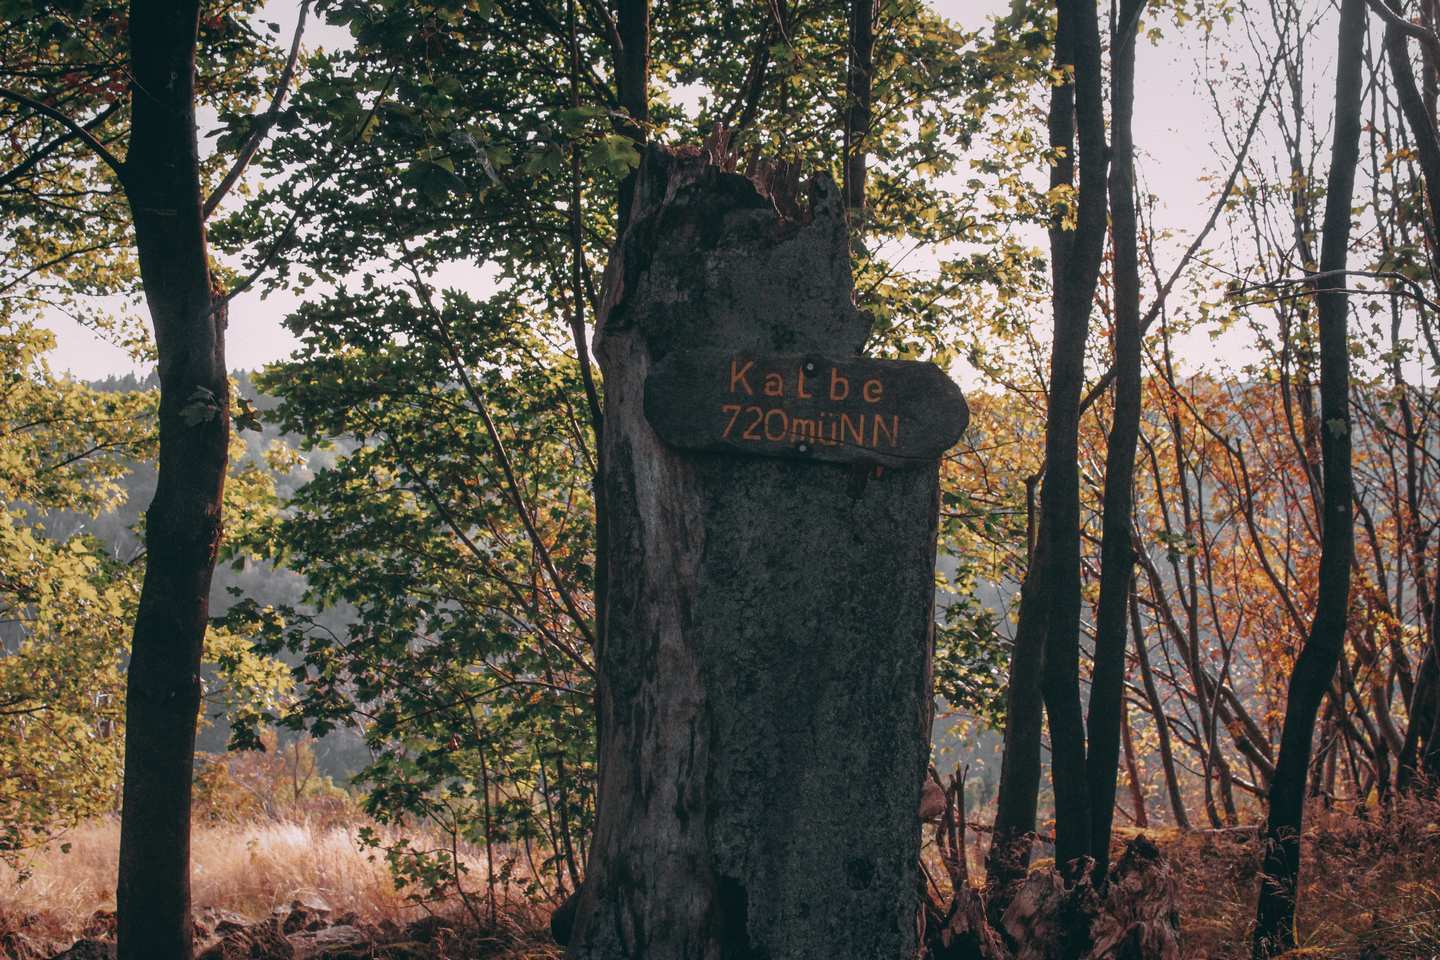 Oben auf der Kalbe angekommen, begrüßt uns das Schild mit der Aufschrift: Kalbe 720 müNN. Das Holzschild ist an einem Baumstumpf angebracht.